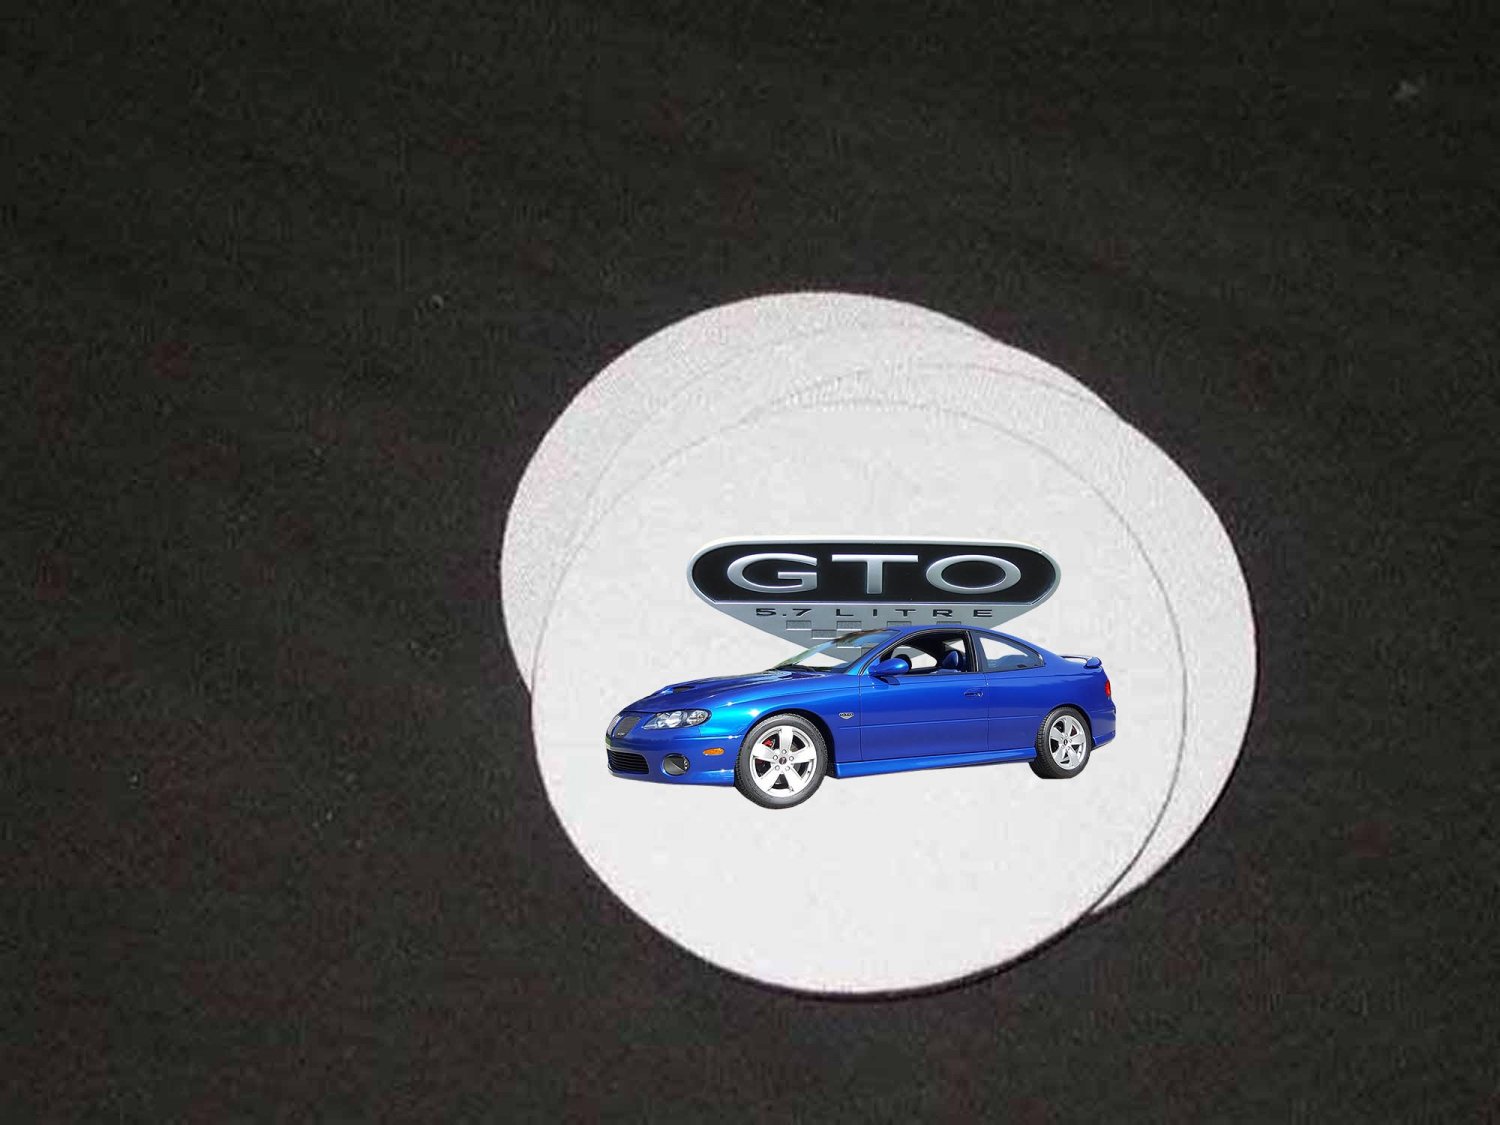 New 2005 Pontiac GTO Soft Coaster set!!